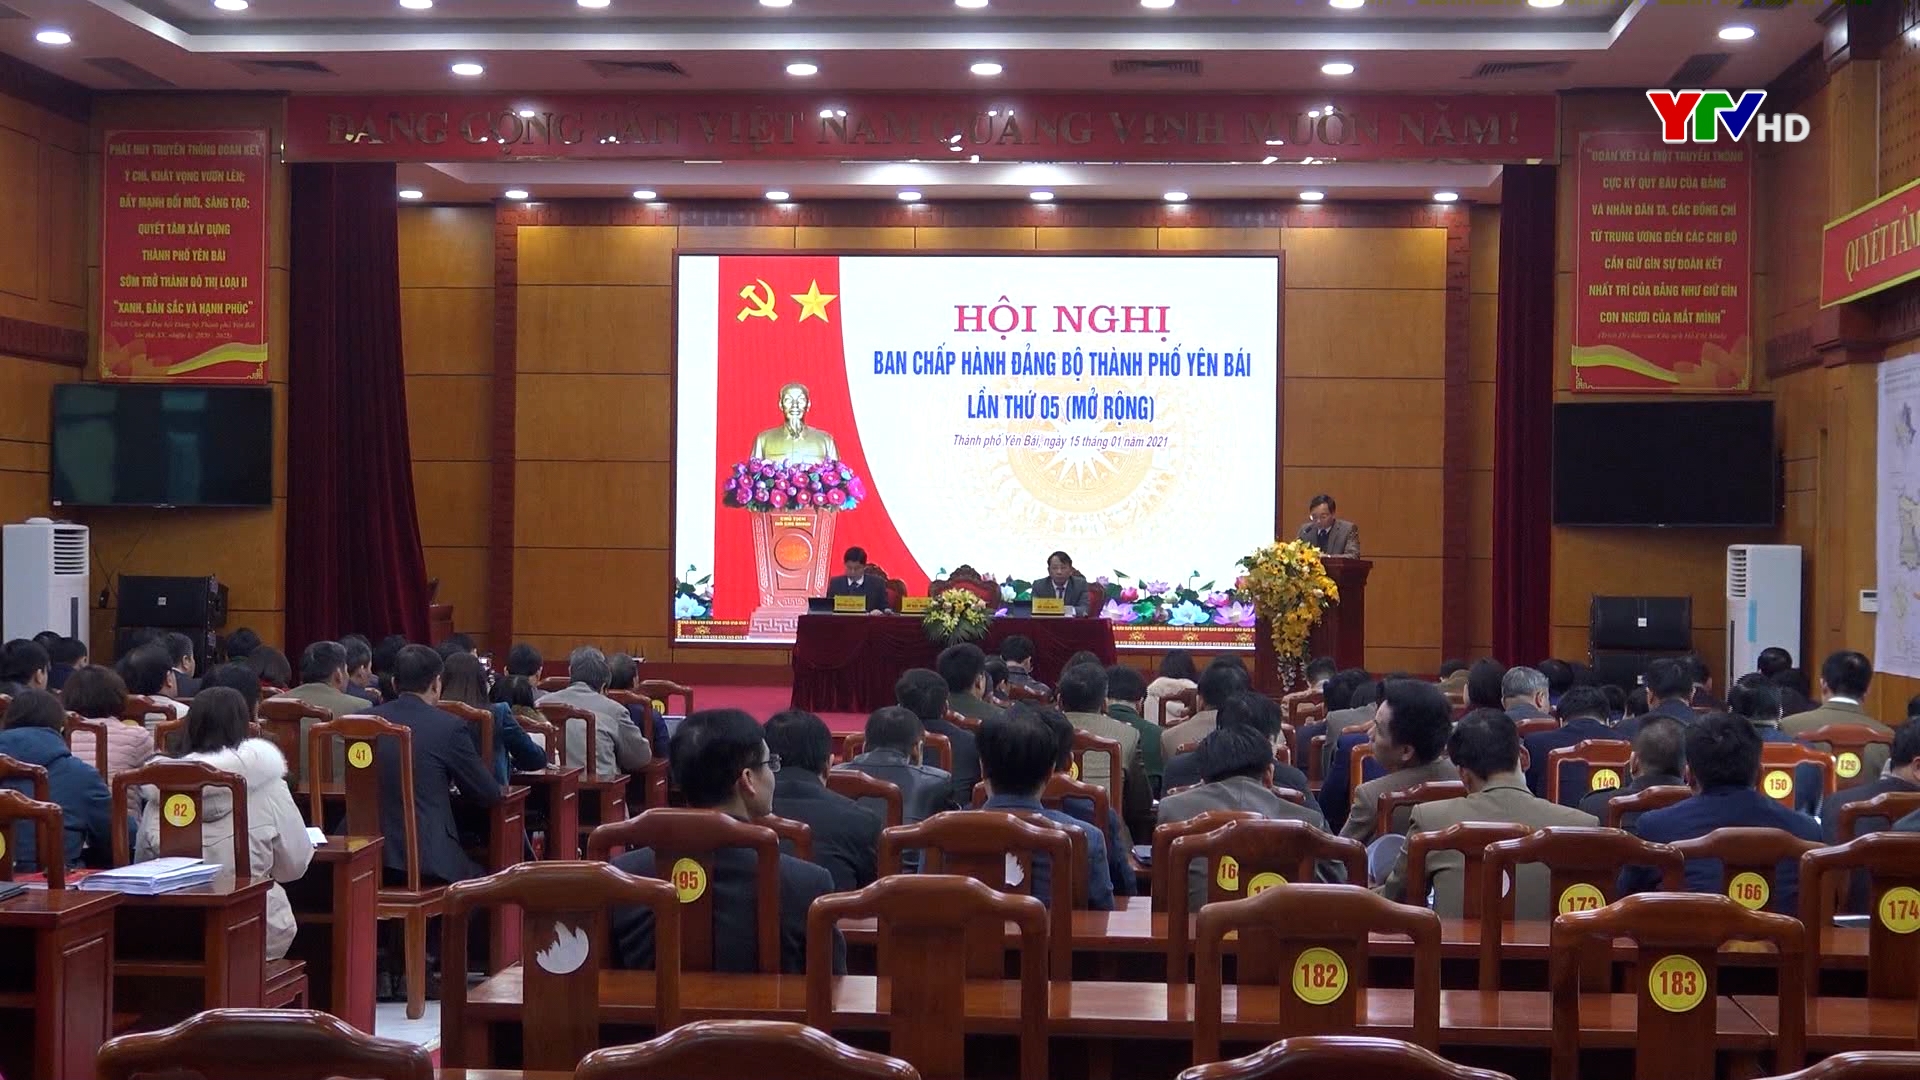 Hội nghị lần thứ 5 - Ban Chấp hành Đảng bộ thành phố Yên Bái